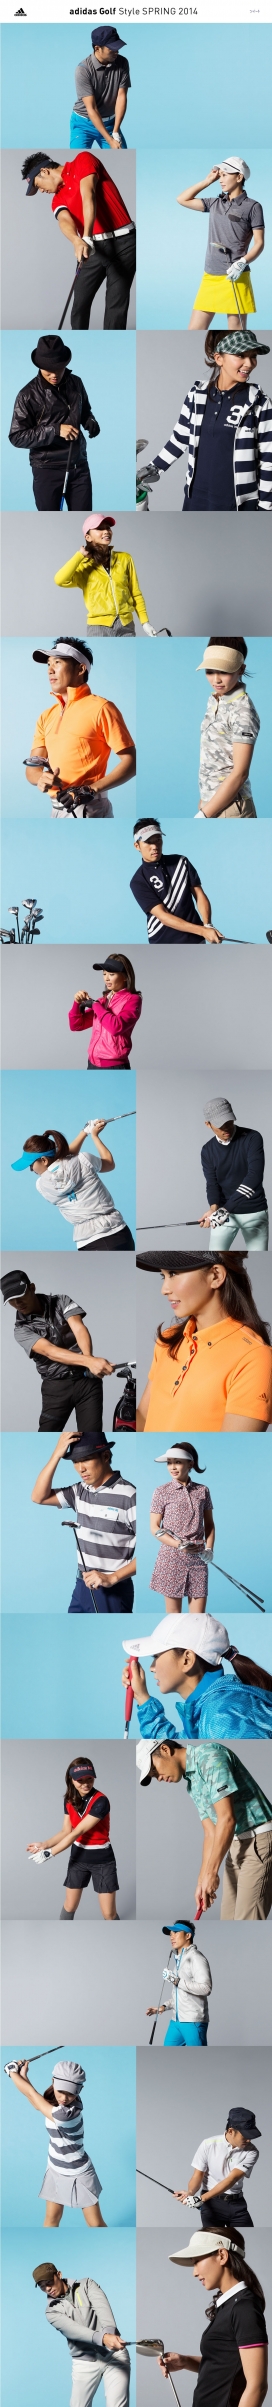 2014-Adidas阿迪达斯高尔夫春季风格时装网站。